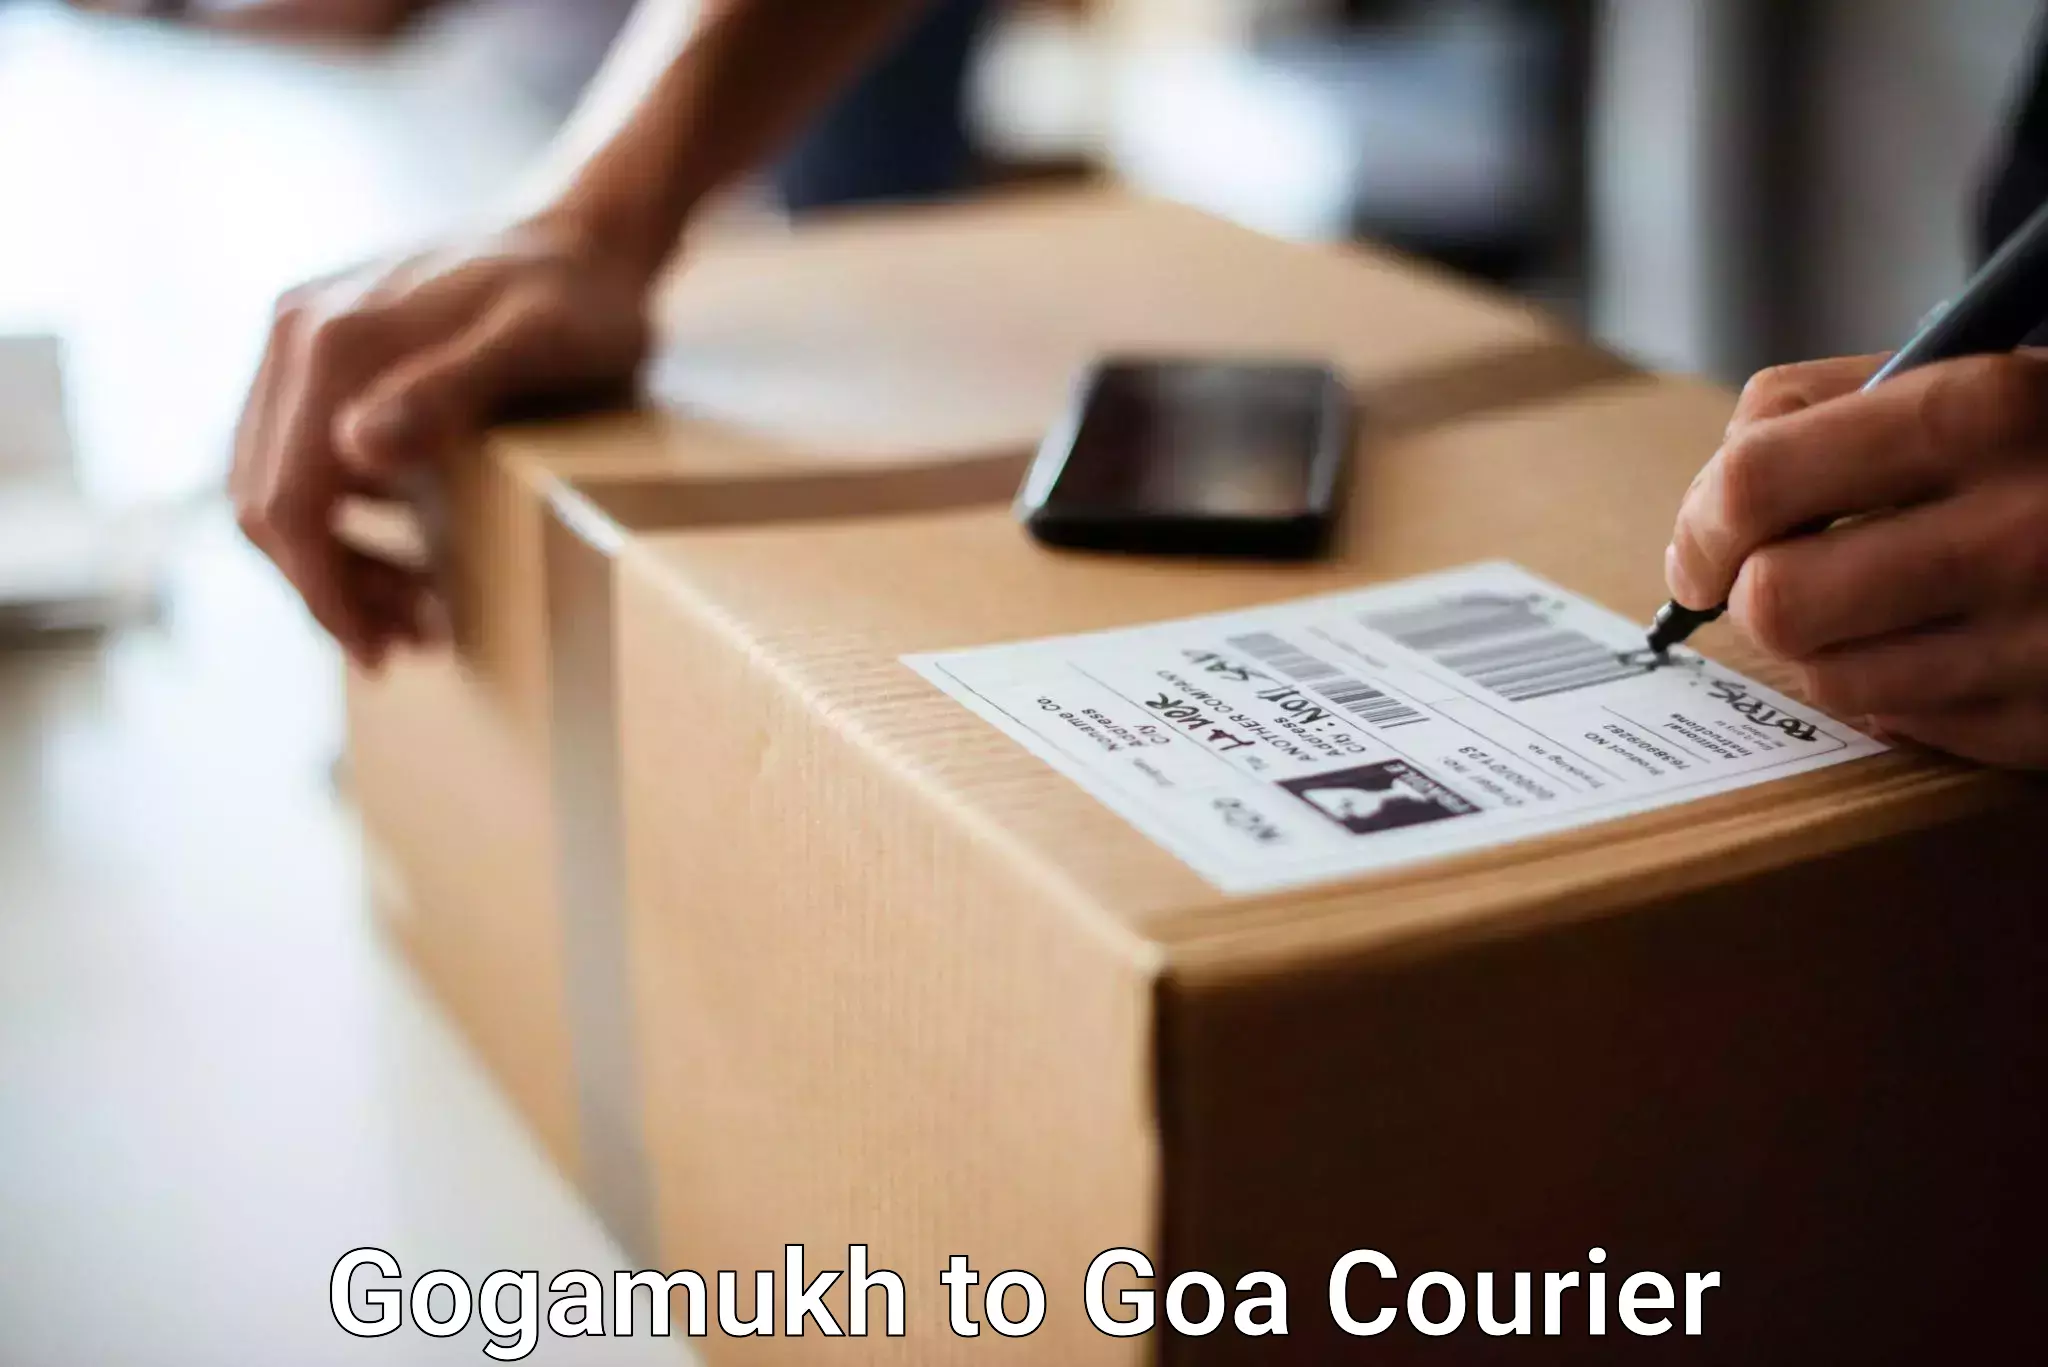 Unaccompanied luggage service Gogamukh to Goa